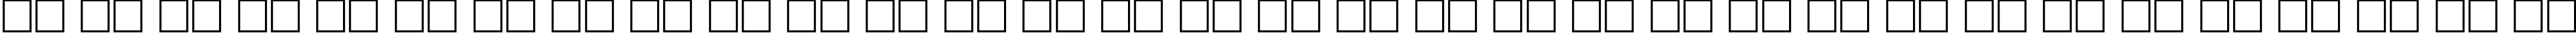 Пример написания русского алфавита шрифтом Fusion